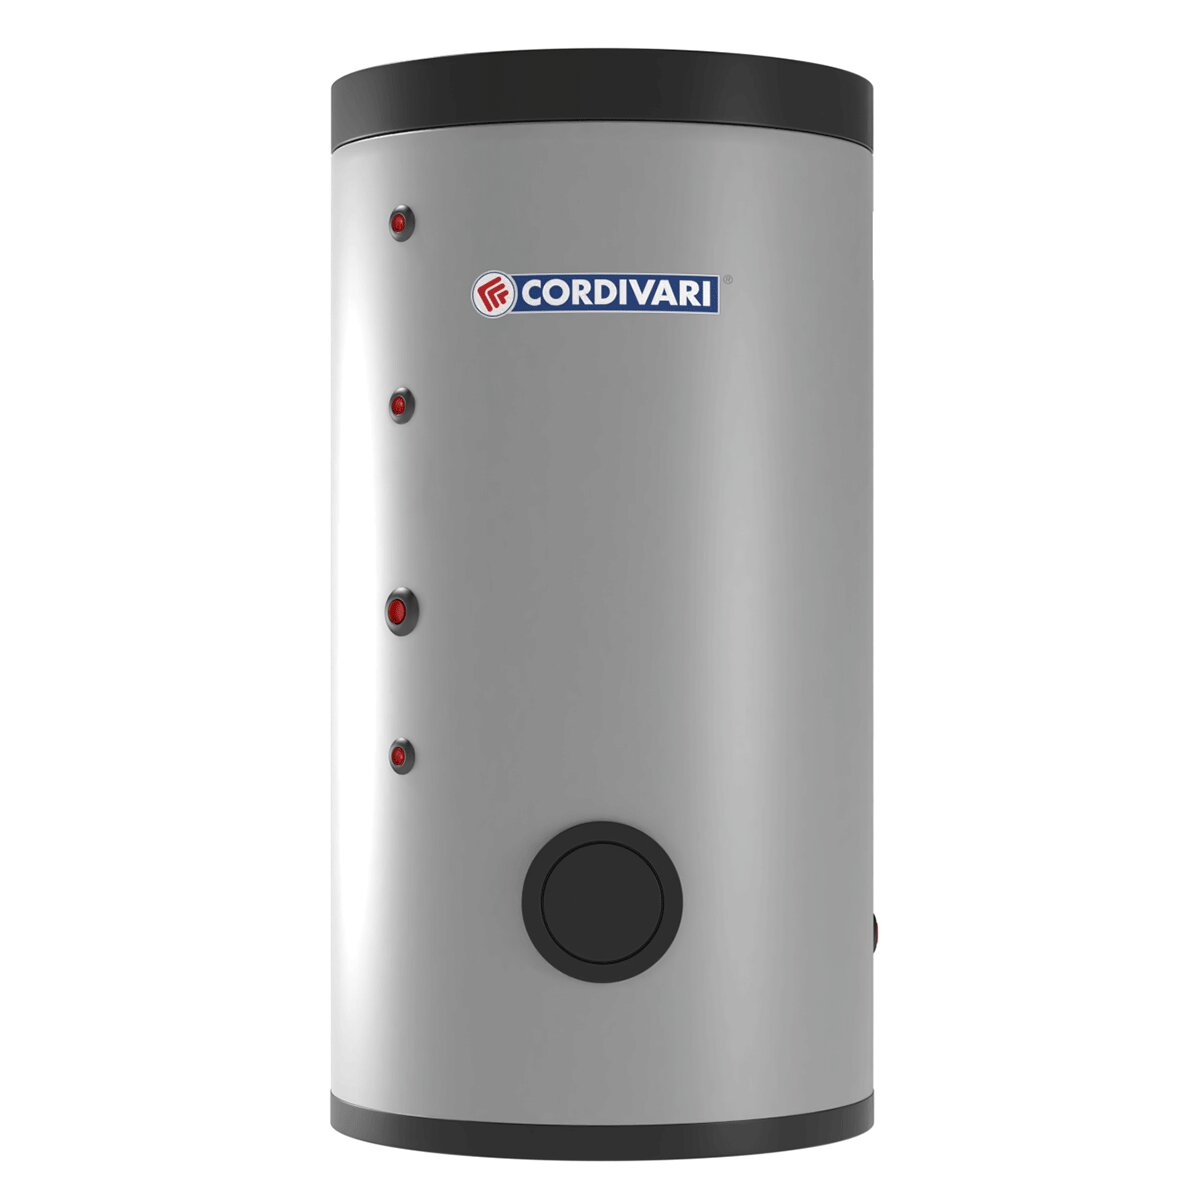 Cordivari BOLLY 2 XL WB Wasserkessel für sanitäres Warmwasser mit 2 festen Wärmetauschern 200 Liter